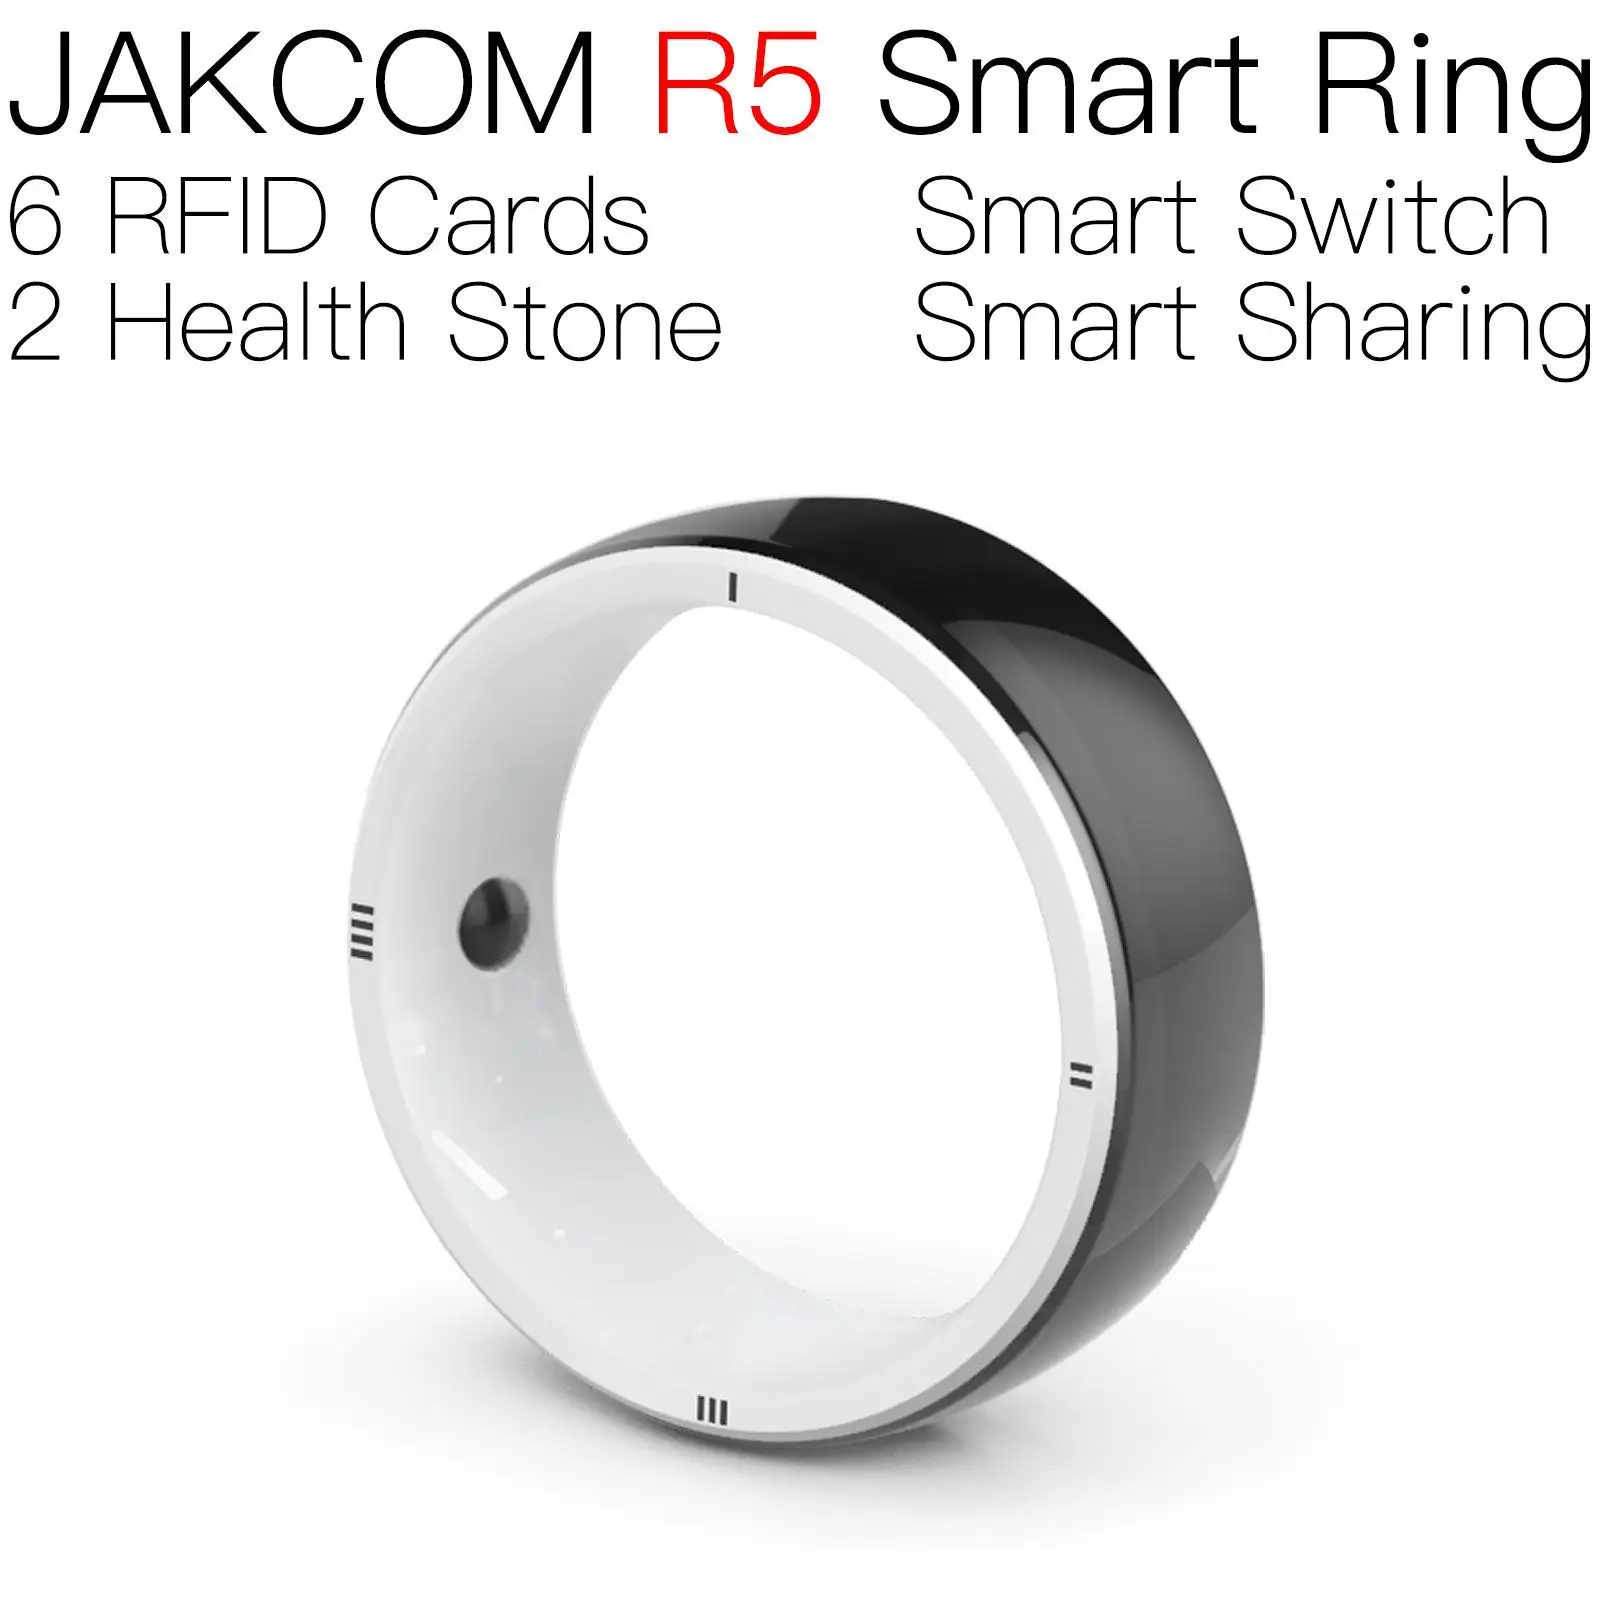 

JAKCOM R5 Smart Ring For men women t5577 dual frequency nfc door opener 13 56 mhz rfid badge comptaible magnet locked dor